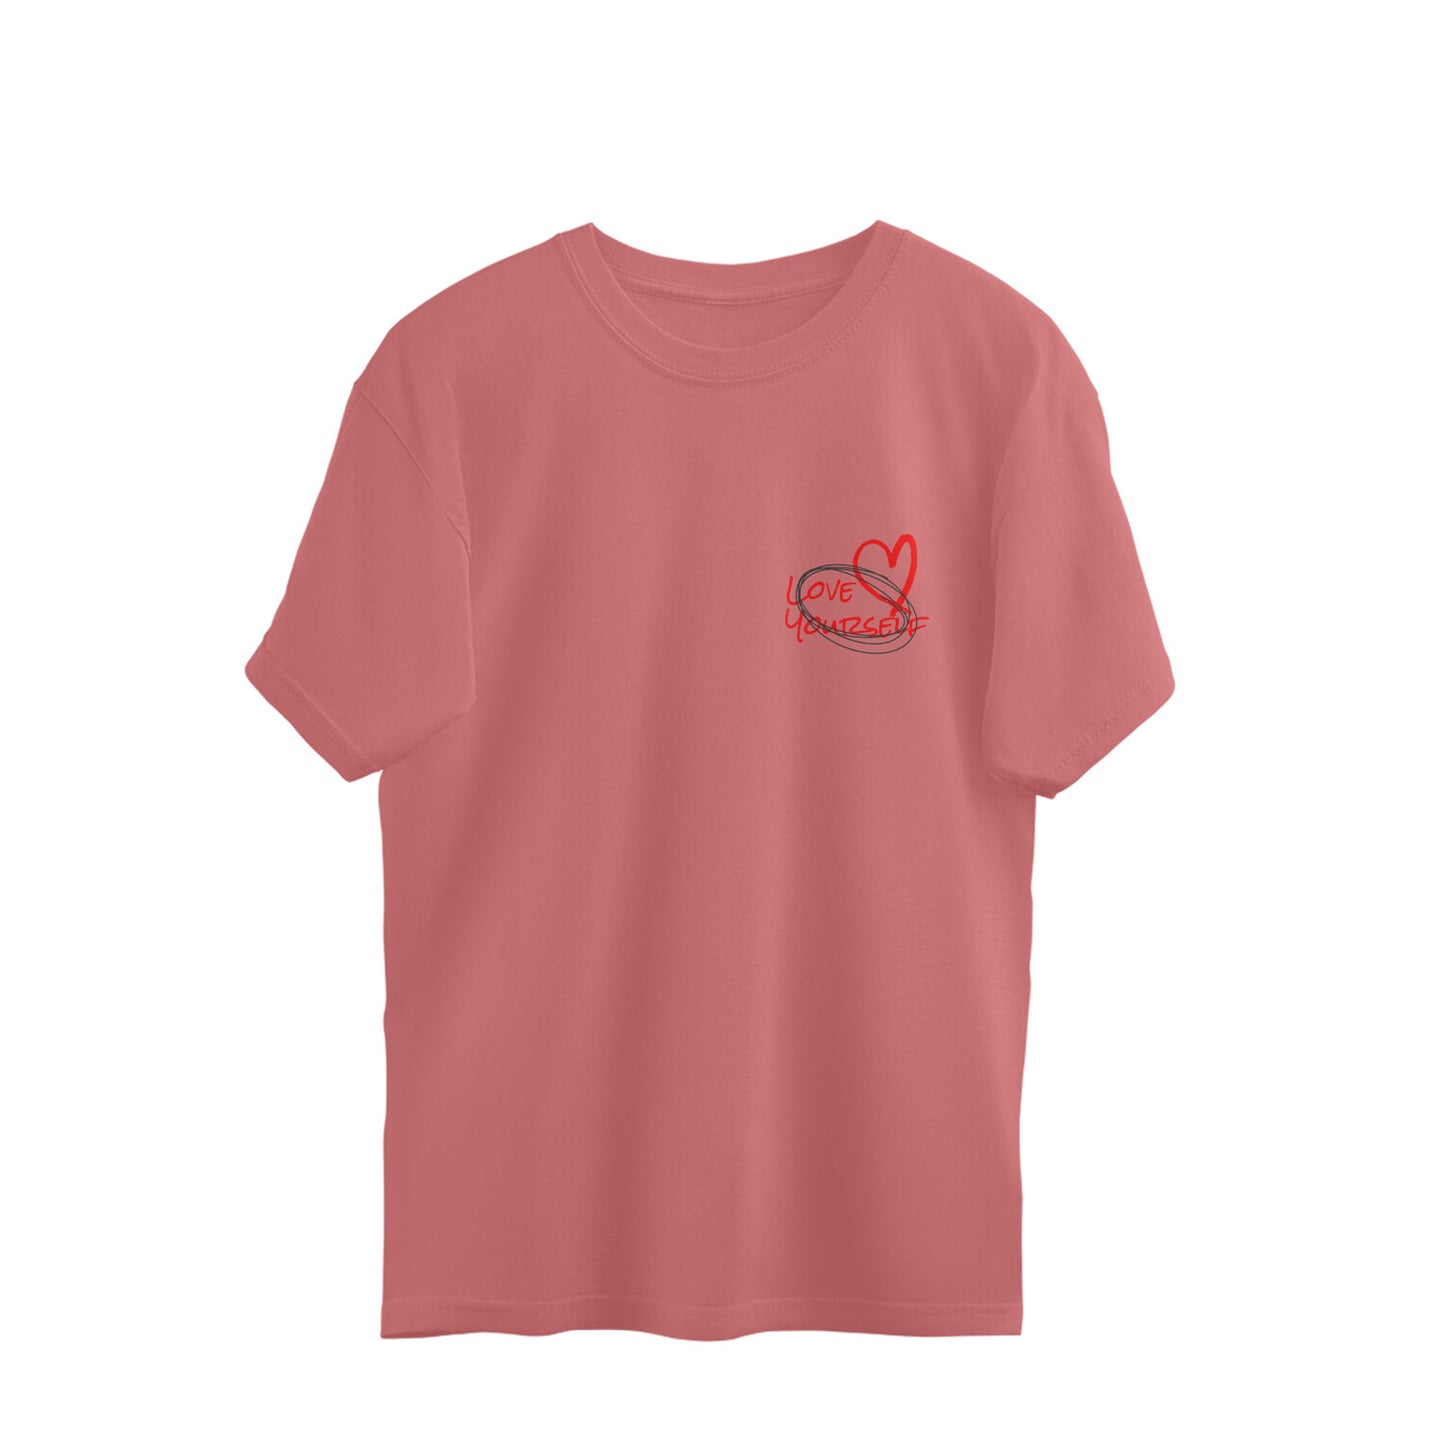 ISHO "Love YourSelf" Back Print Oversized Tshirt